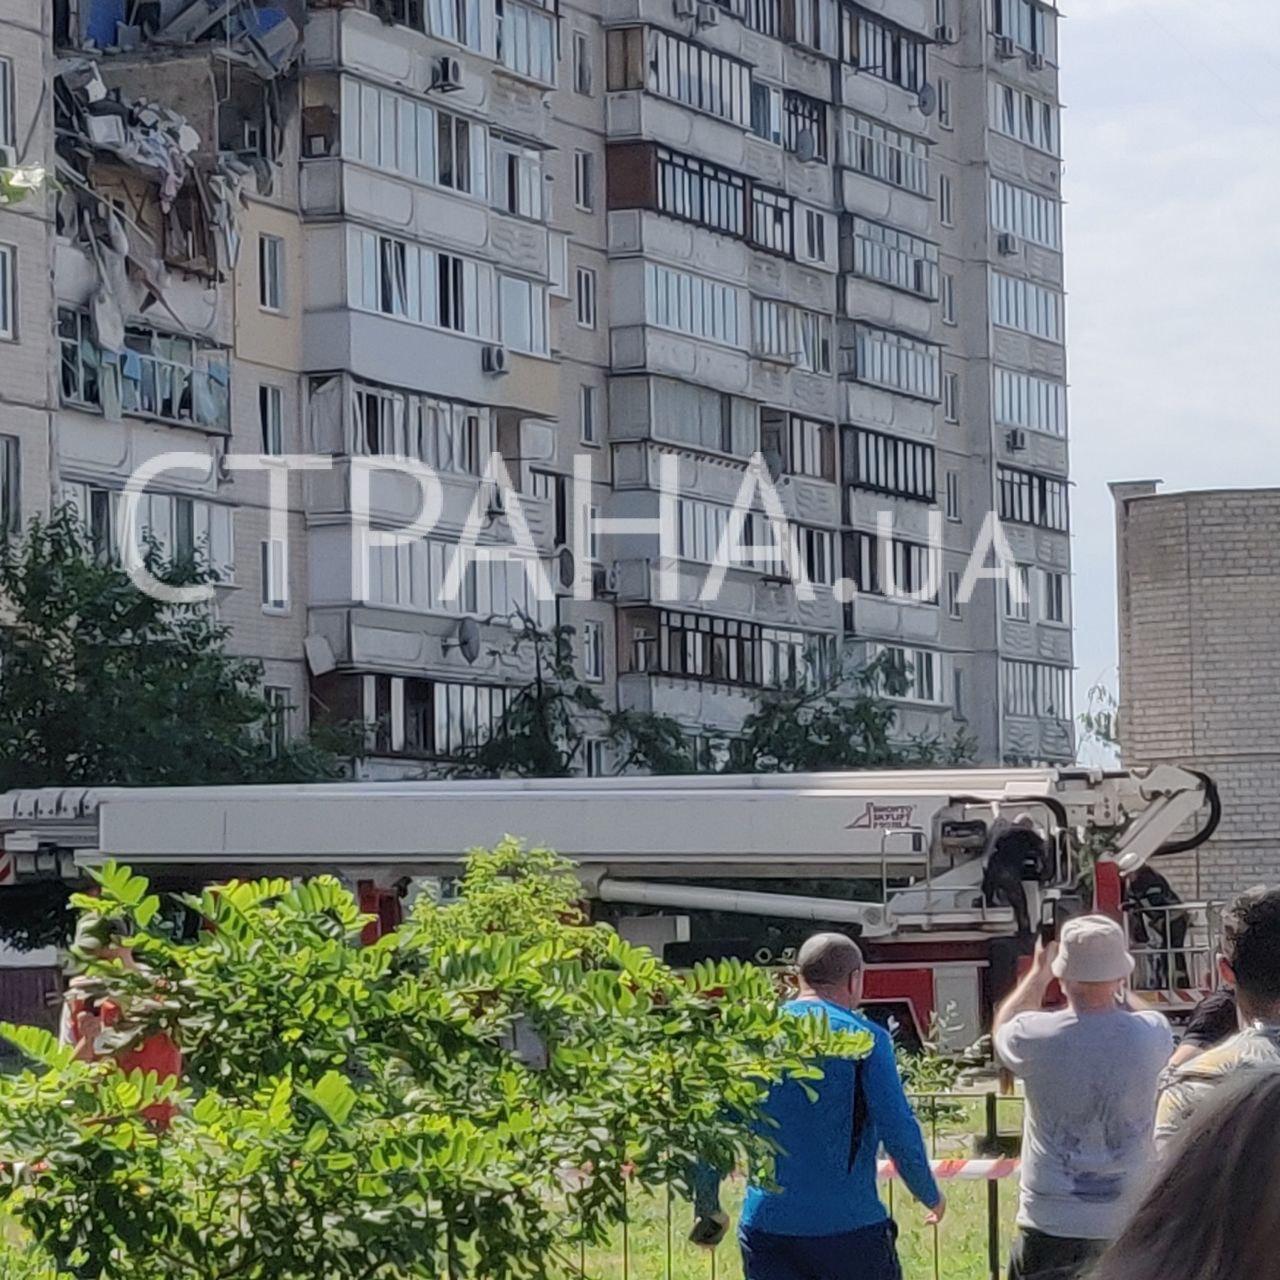 "Везде сильный запах газа". Появились фото и видео с места взрыва многоэтажки в Киеве. Фото: Страна